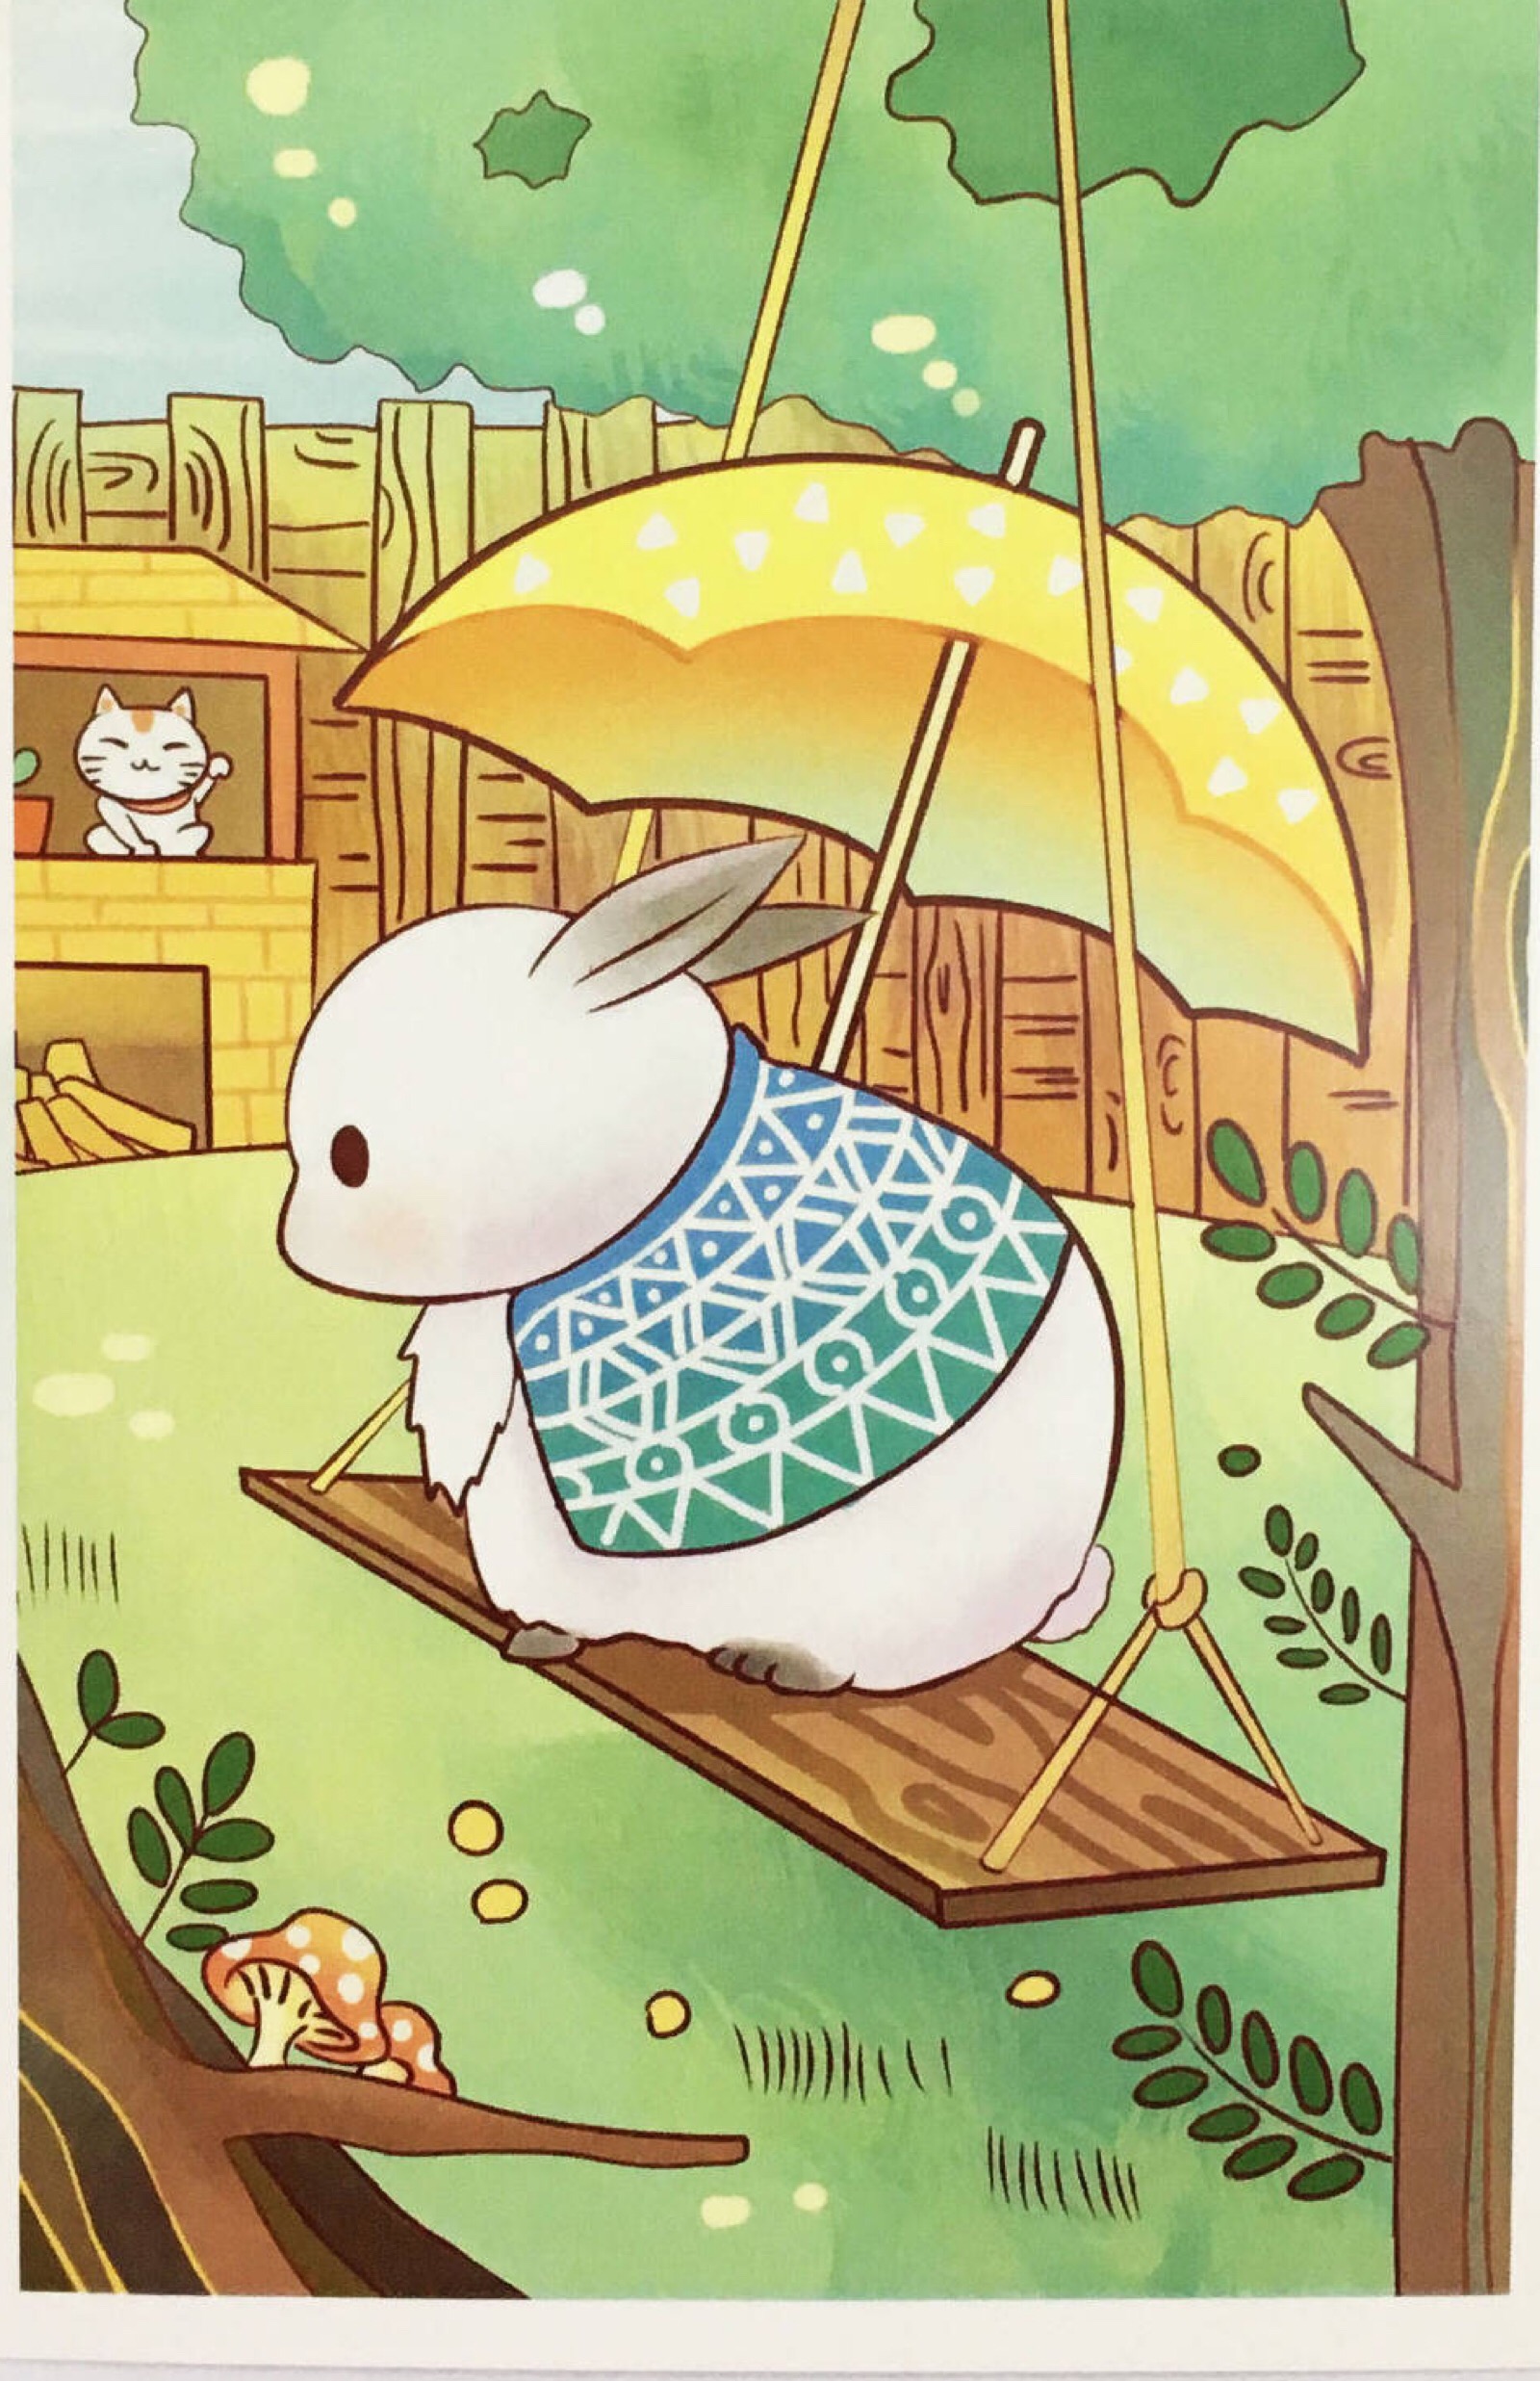 可爱的小兔子 暖心 治愈画风 侵删